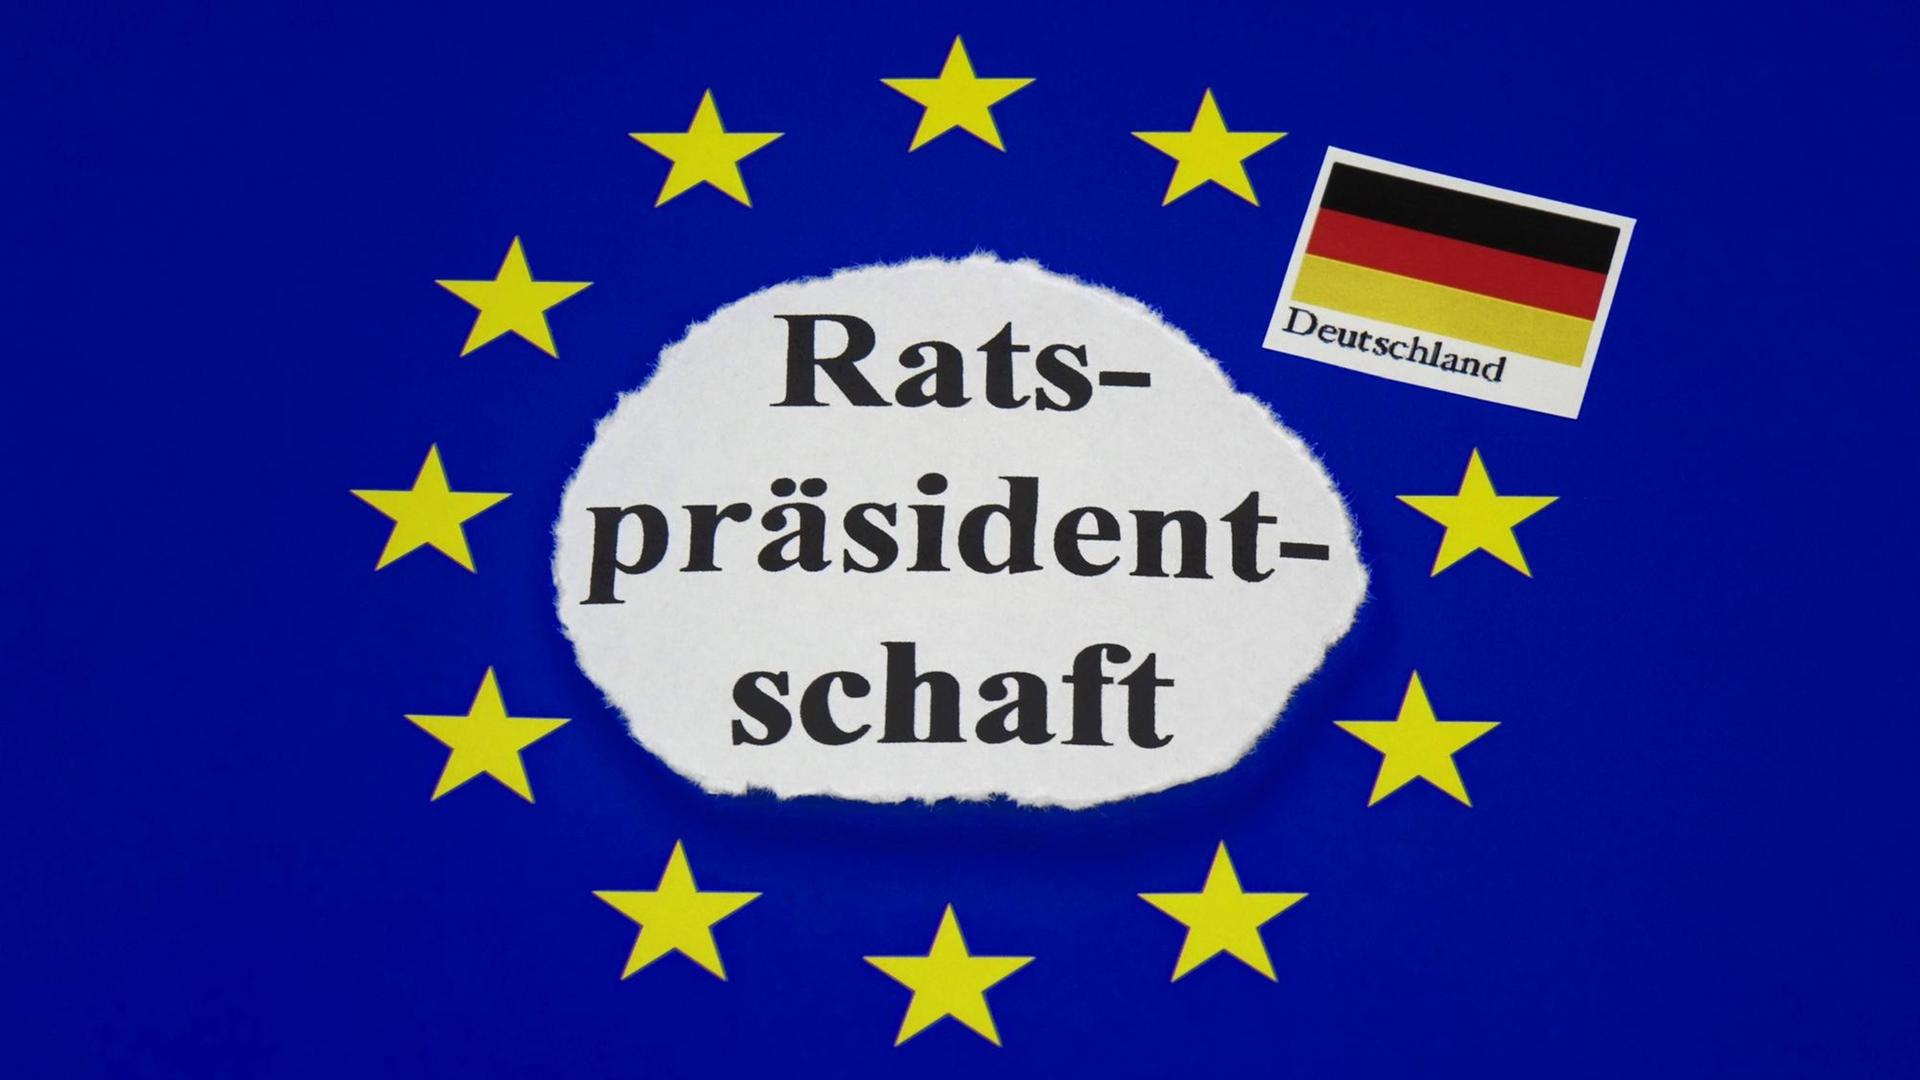 Die Deutschland-Fahne und die Fahne von der Europäischen Union